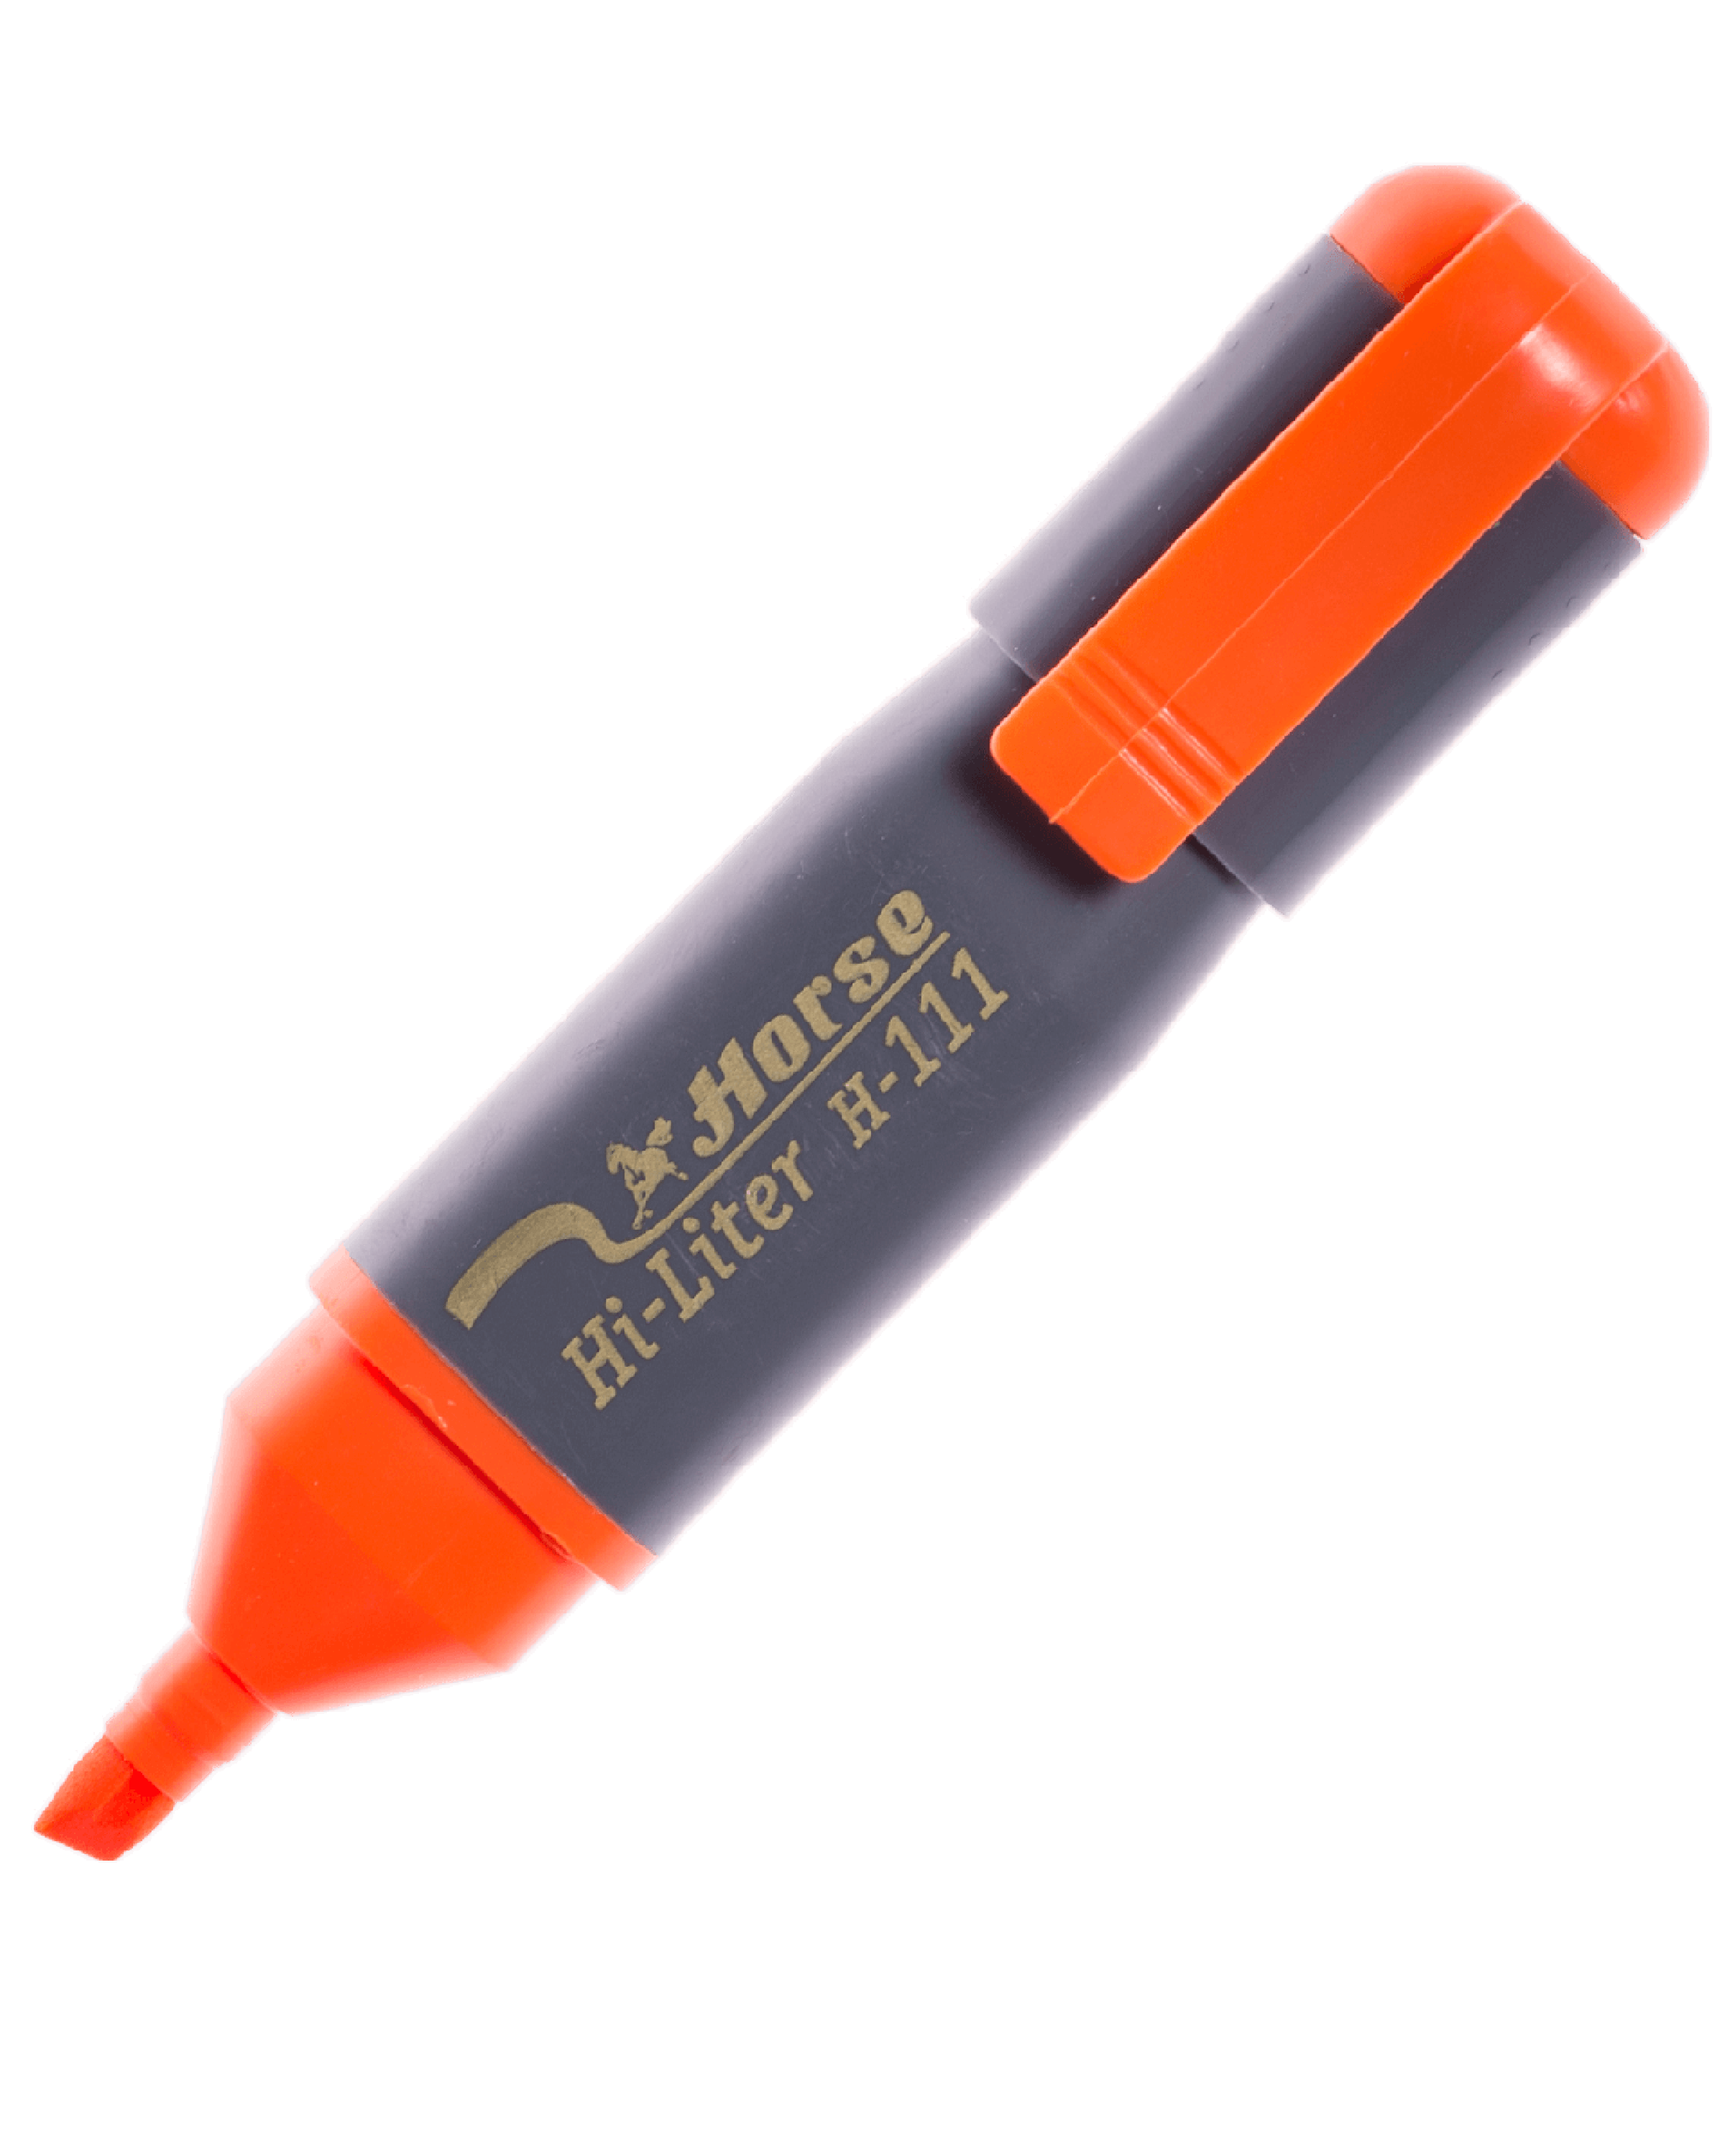 ปากกาเน้นข้อความ ตราม้า H-111 สีส้ม